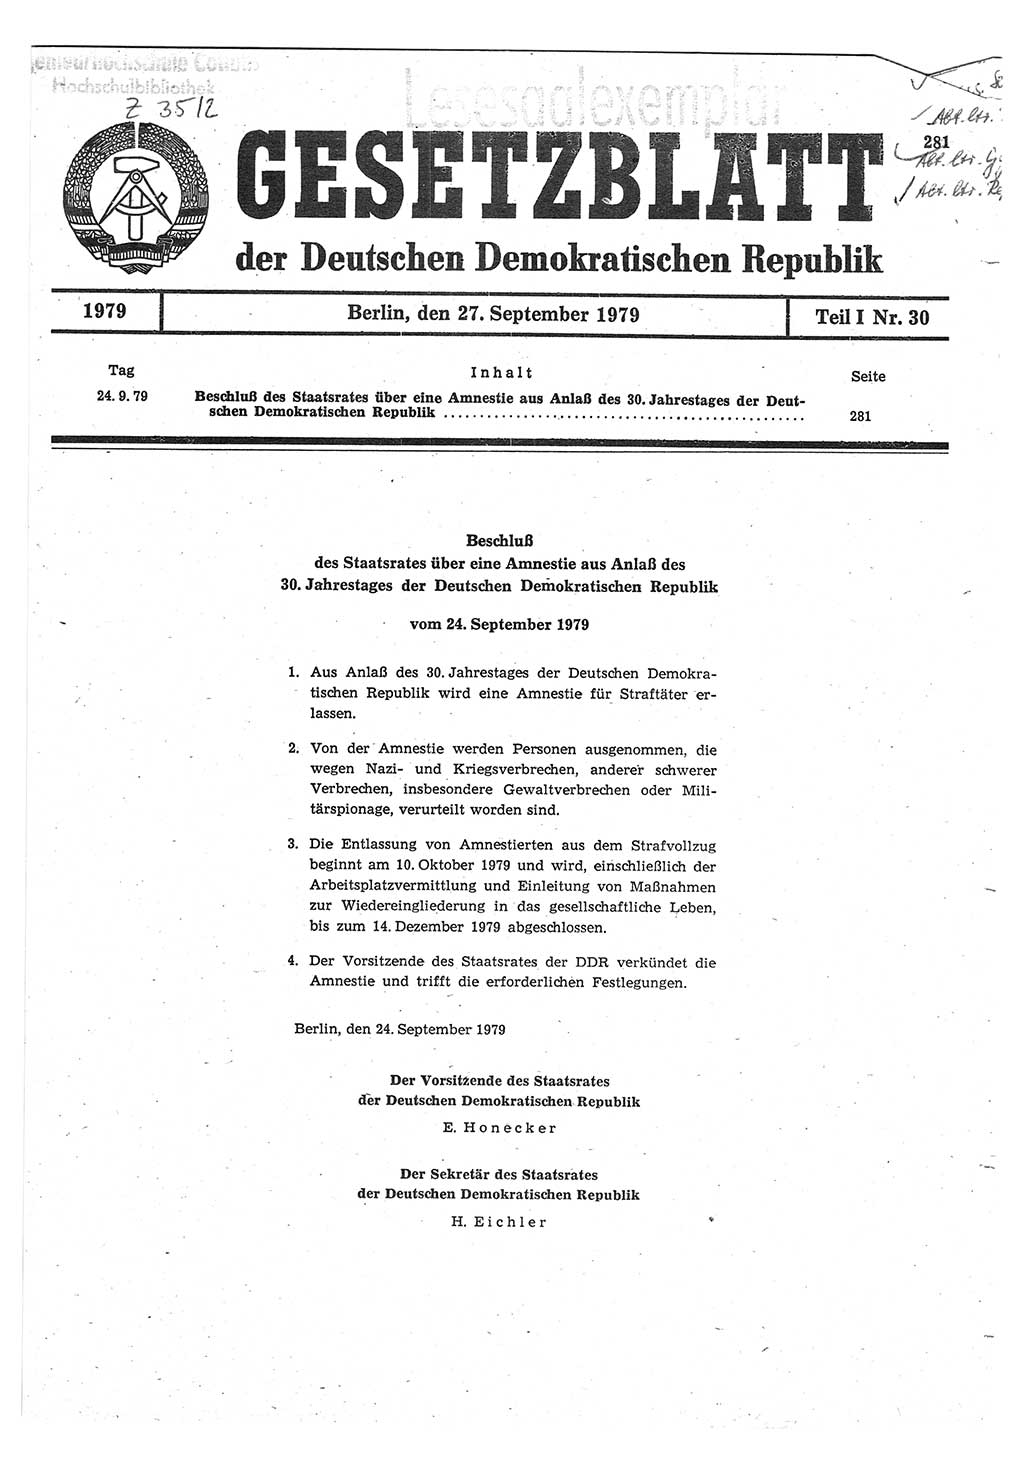 Gesetzblatt (GBl.) der Deutschen Demokratischen Republik (DDR) Teil Ⅰ 1979, Seite 281 (GBl. DDR Ⅰ 1979, S. 281)